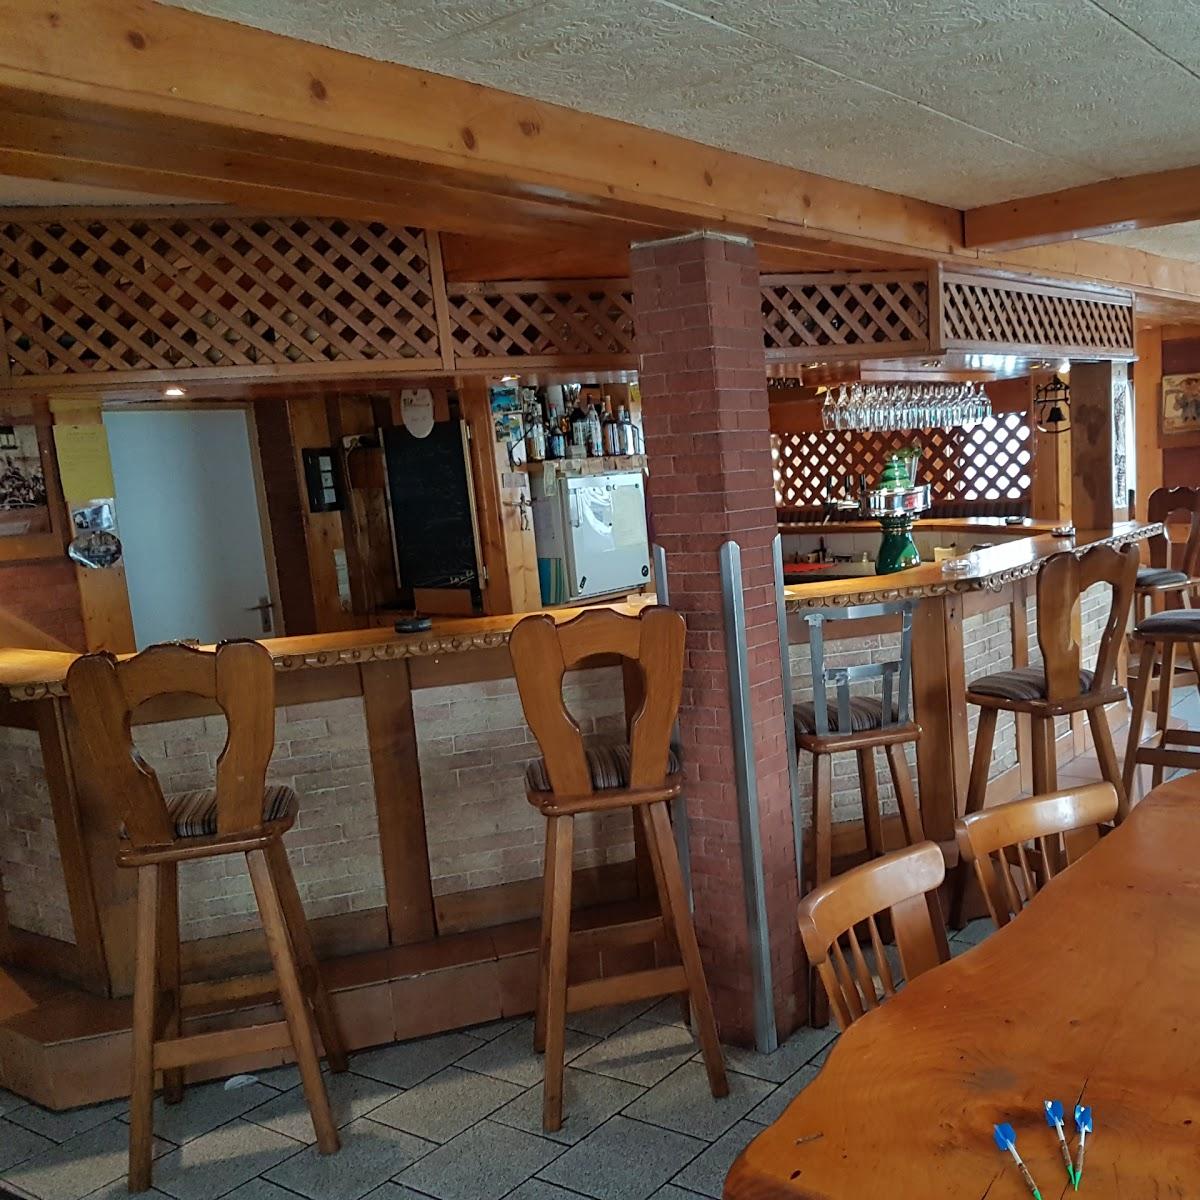 Restaurant "Pilzstübchen" in Haiger